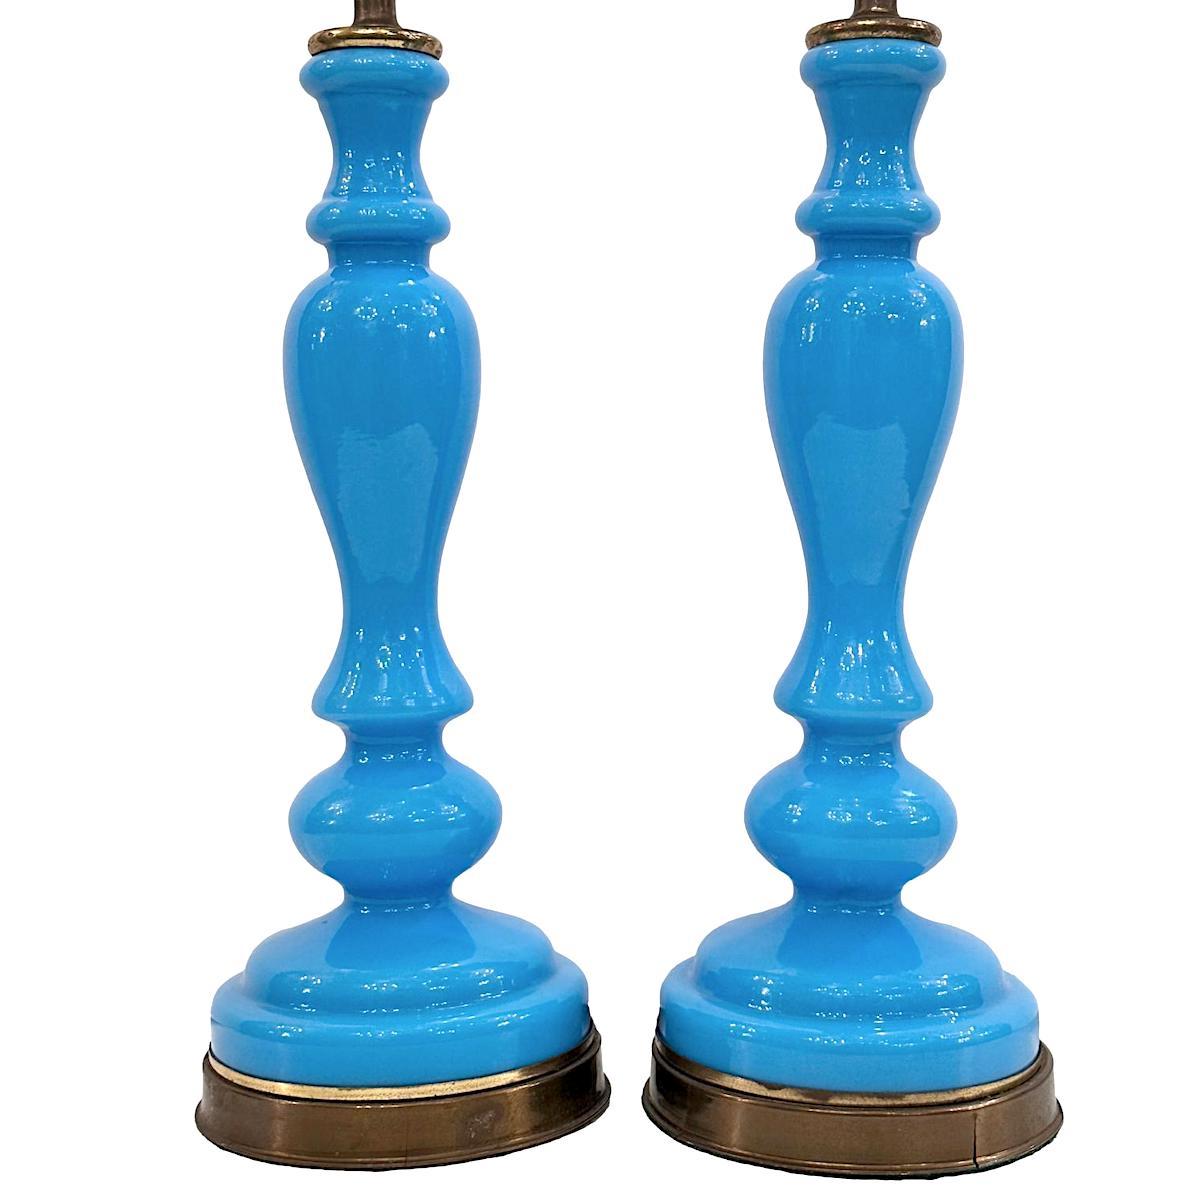 Ein Paar französische Tischlampen aus blauem Opalglas aus den 1920er Jahren.

Abmessungen:
Höhe des Körpers: 14